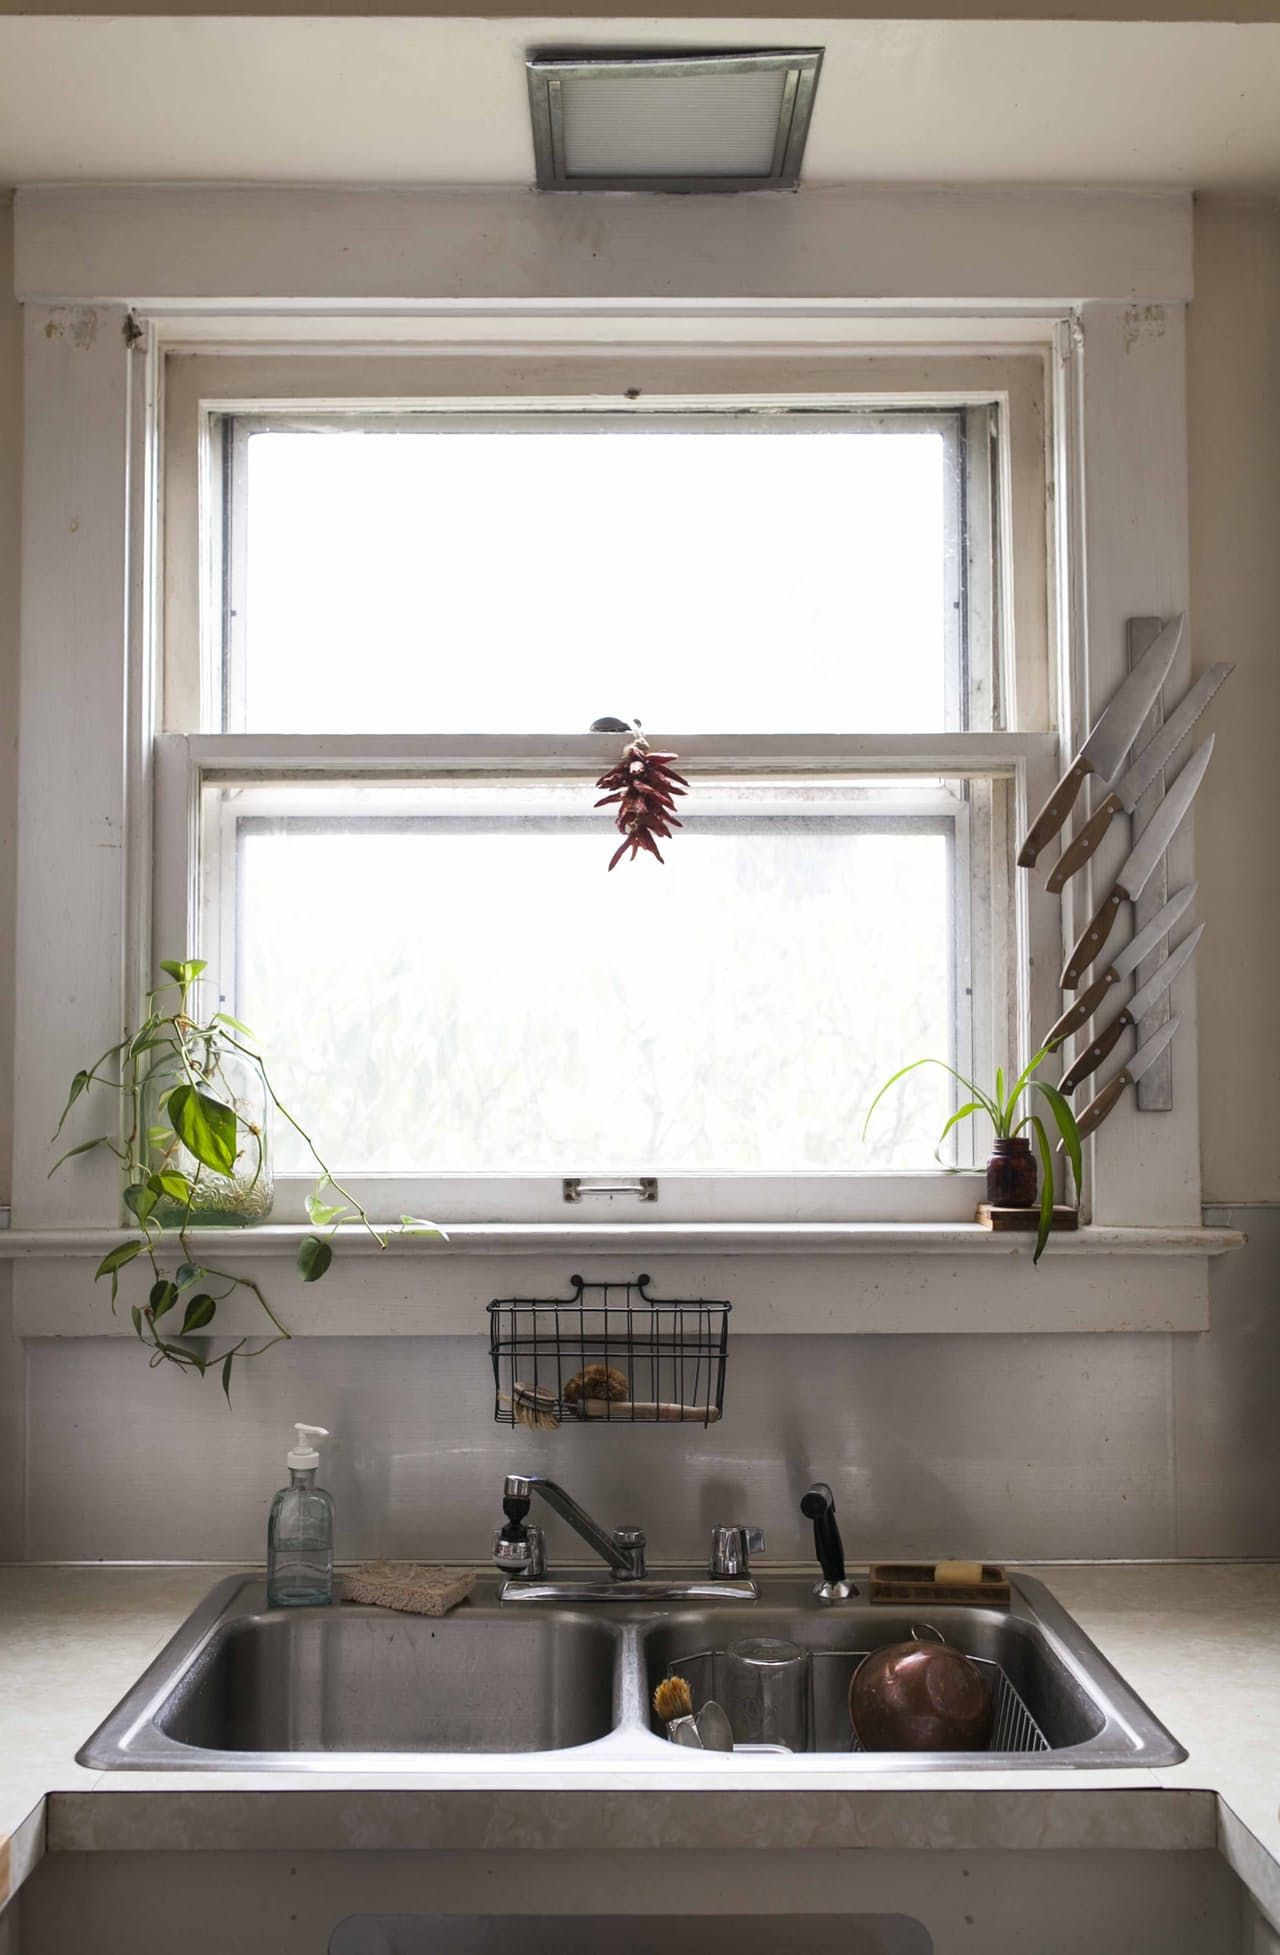 Dao làm bếp đặt cạnh ô cửa sổ cũng là một cách hay để tiêu diệt vi khuẩn nhờ ánh nắng mặt trời.